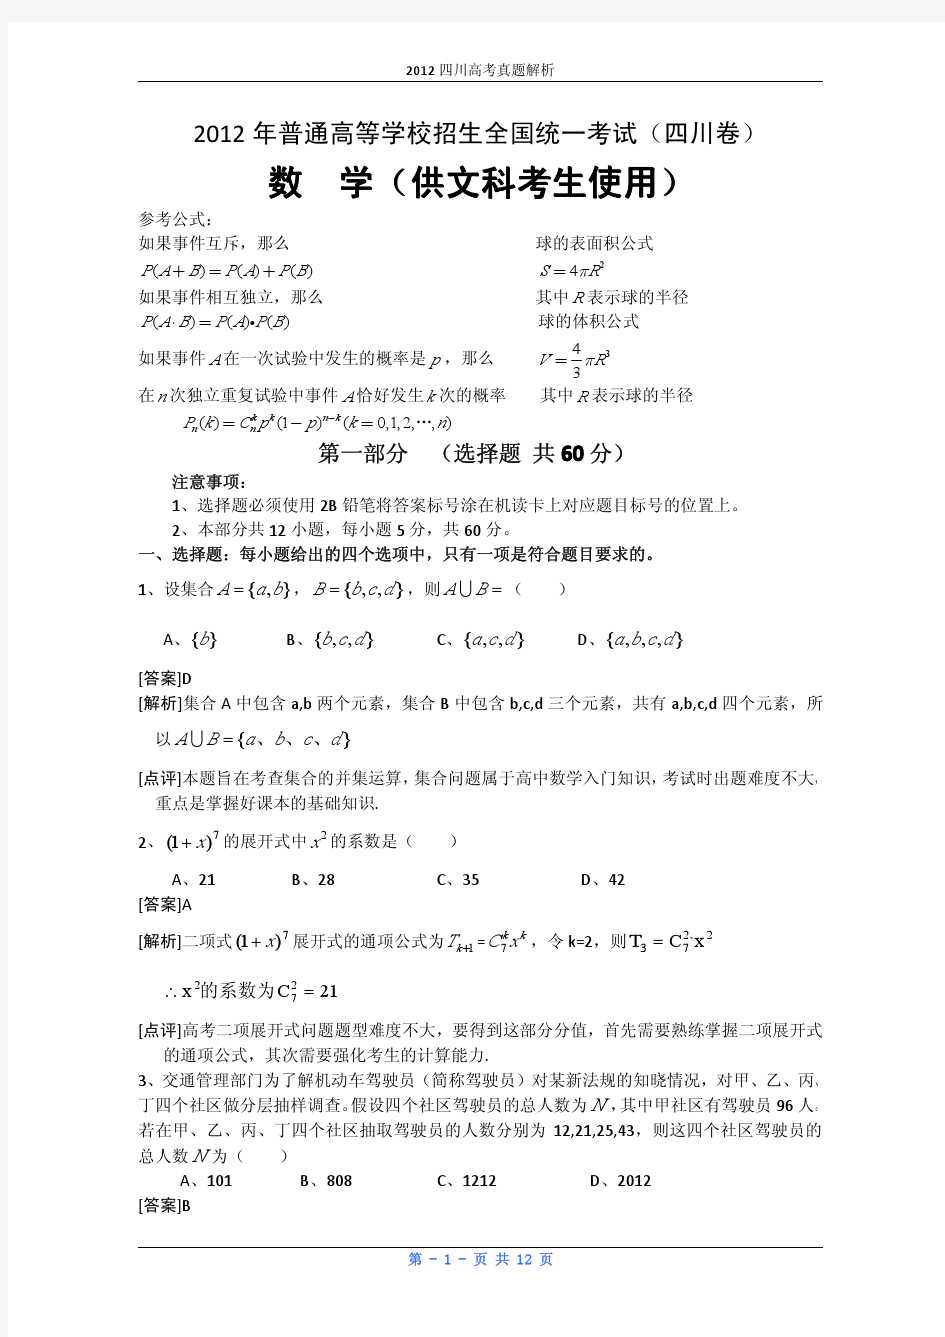 2012年高考真题——数学文(四川卷)解析